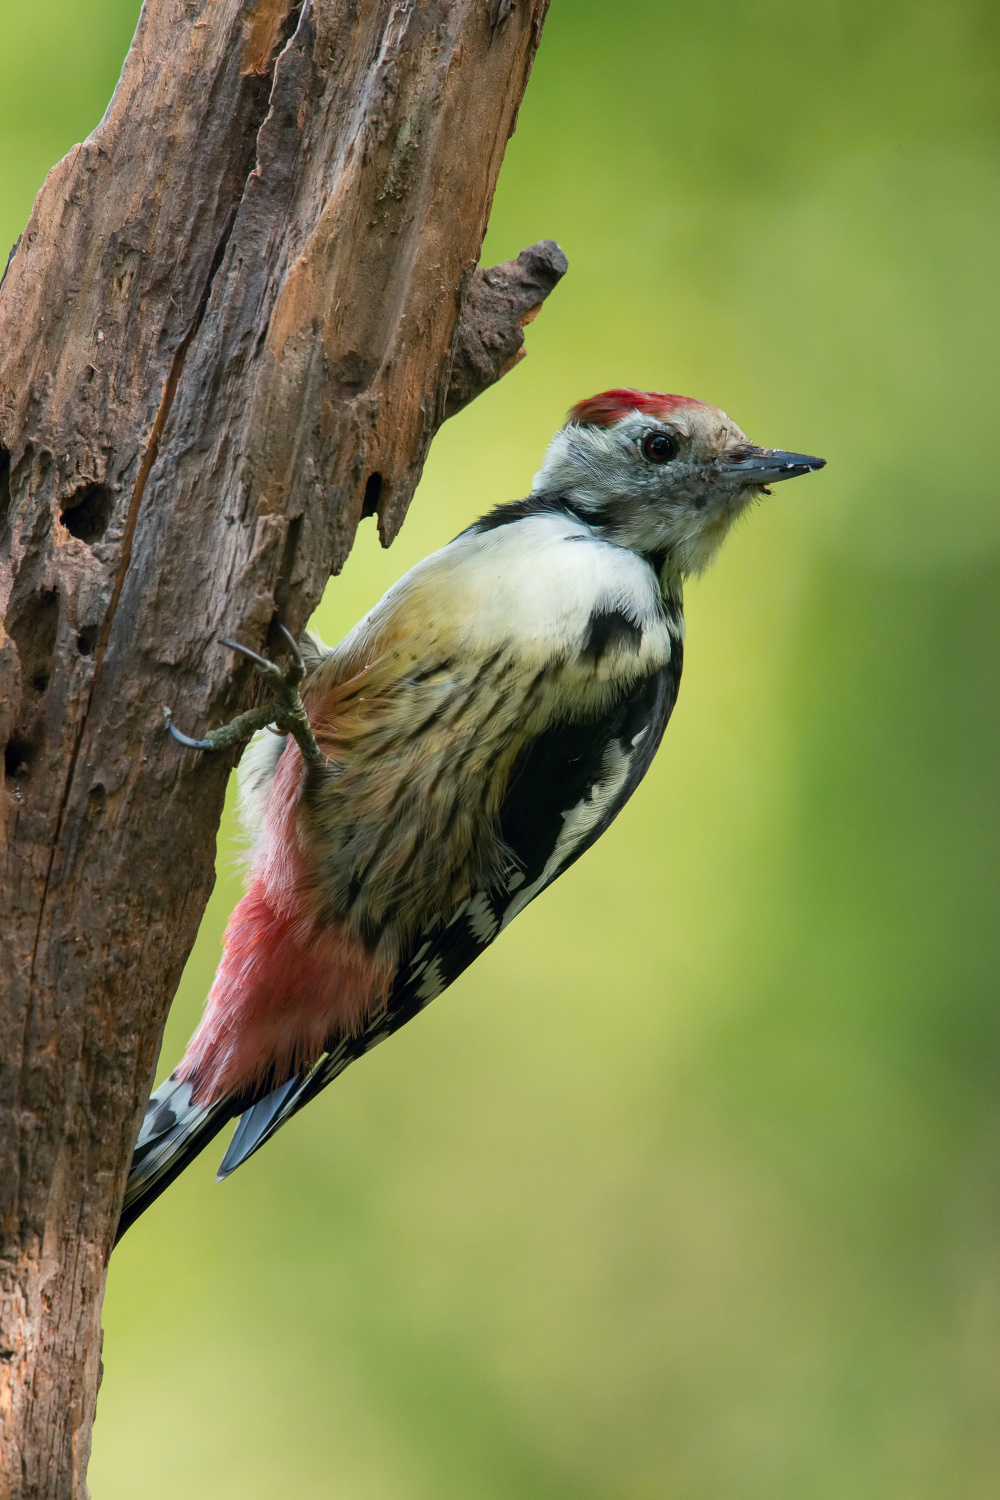 strakapoud prostřední (Dendrocopos medius) Middle spotted woodpecker